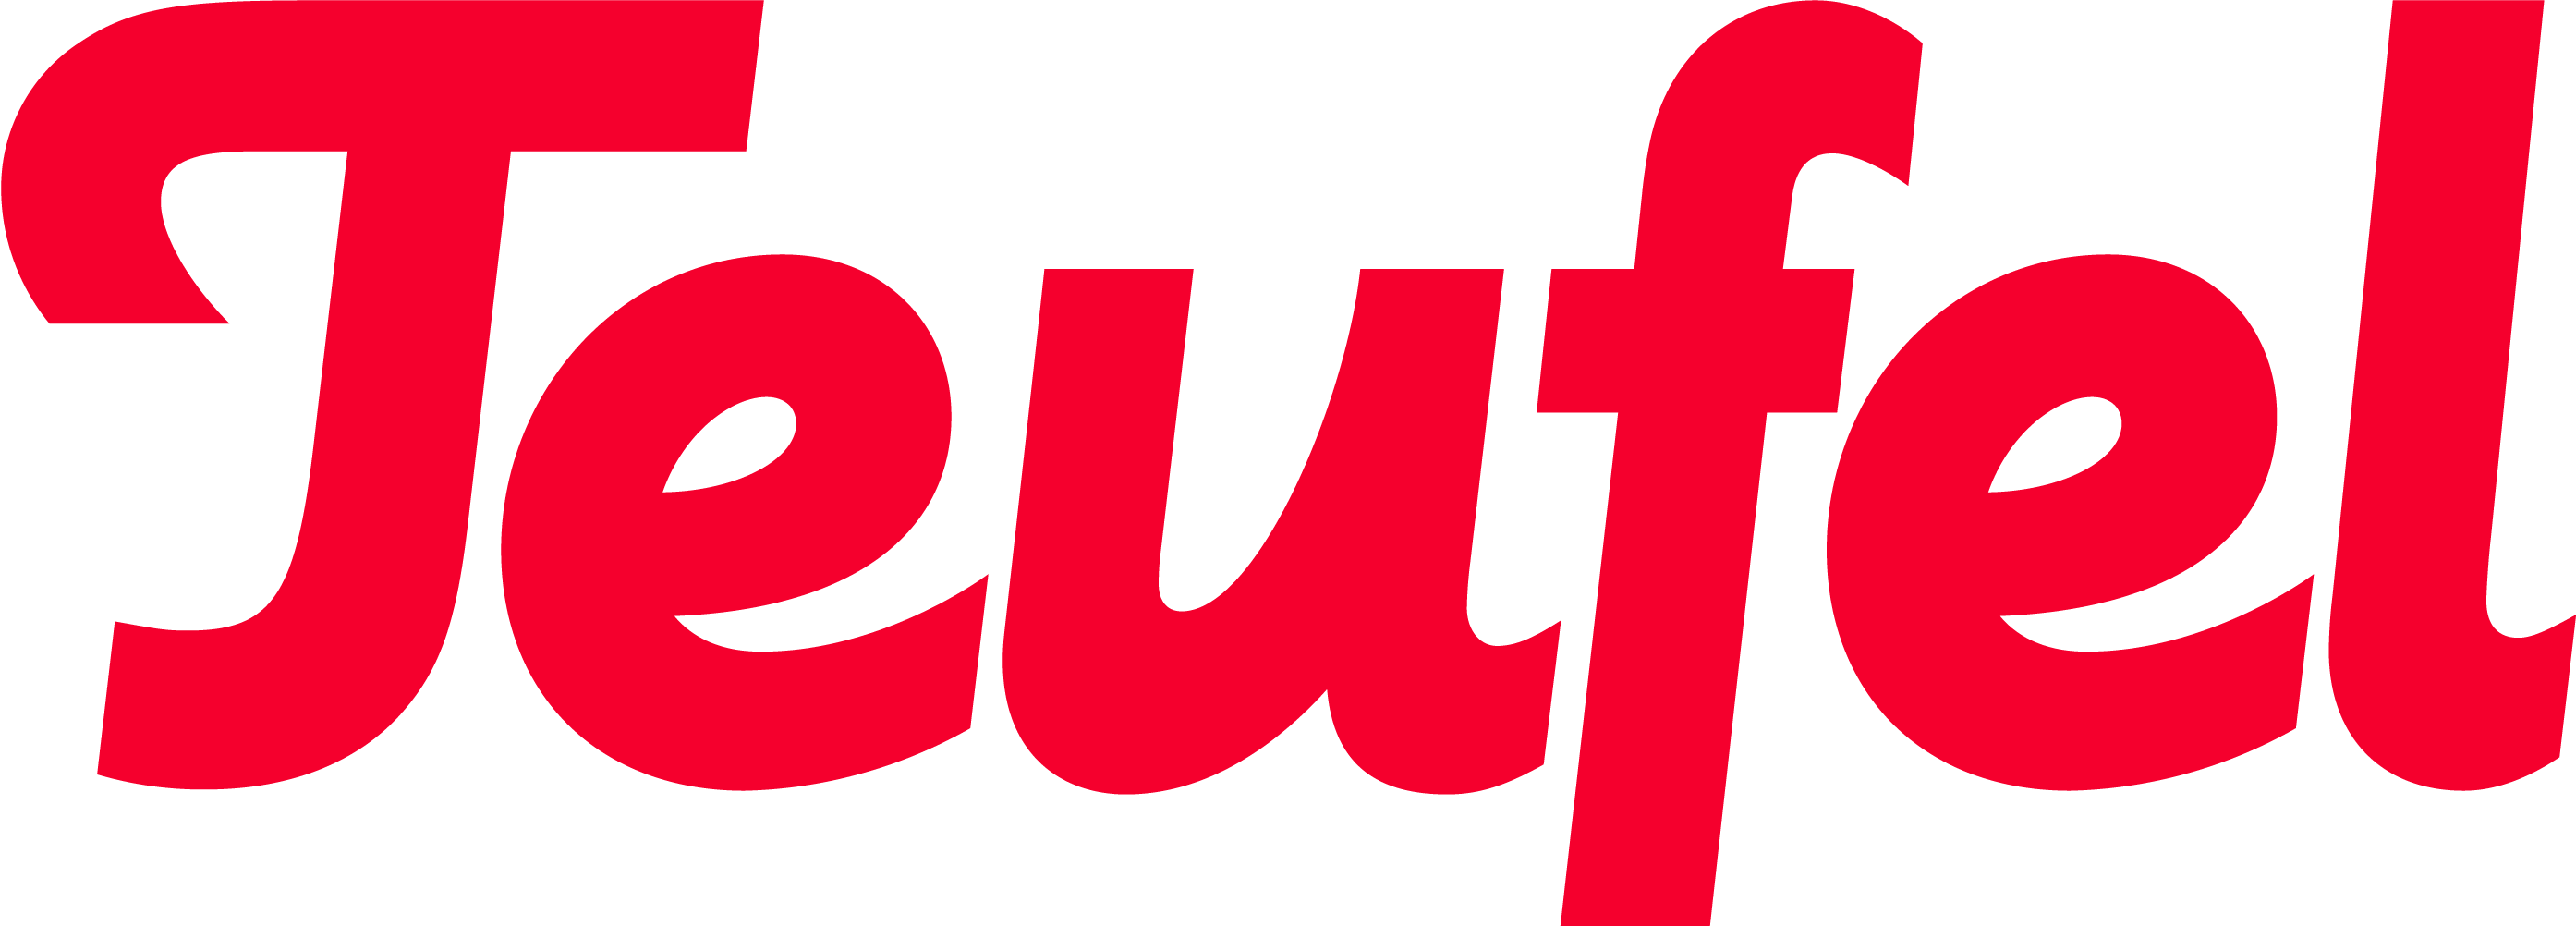 Teufel Logo